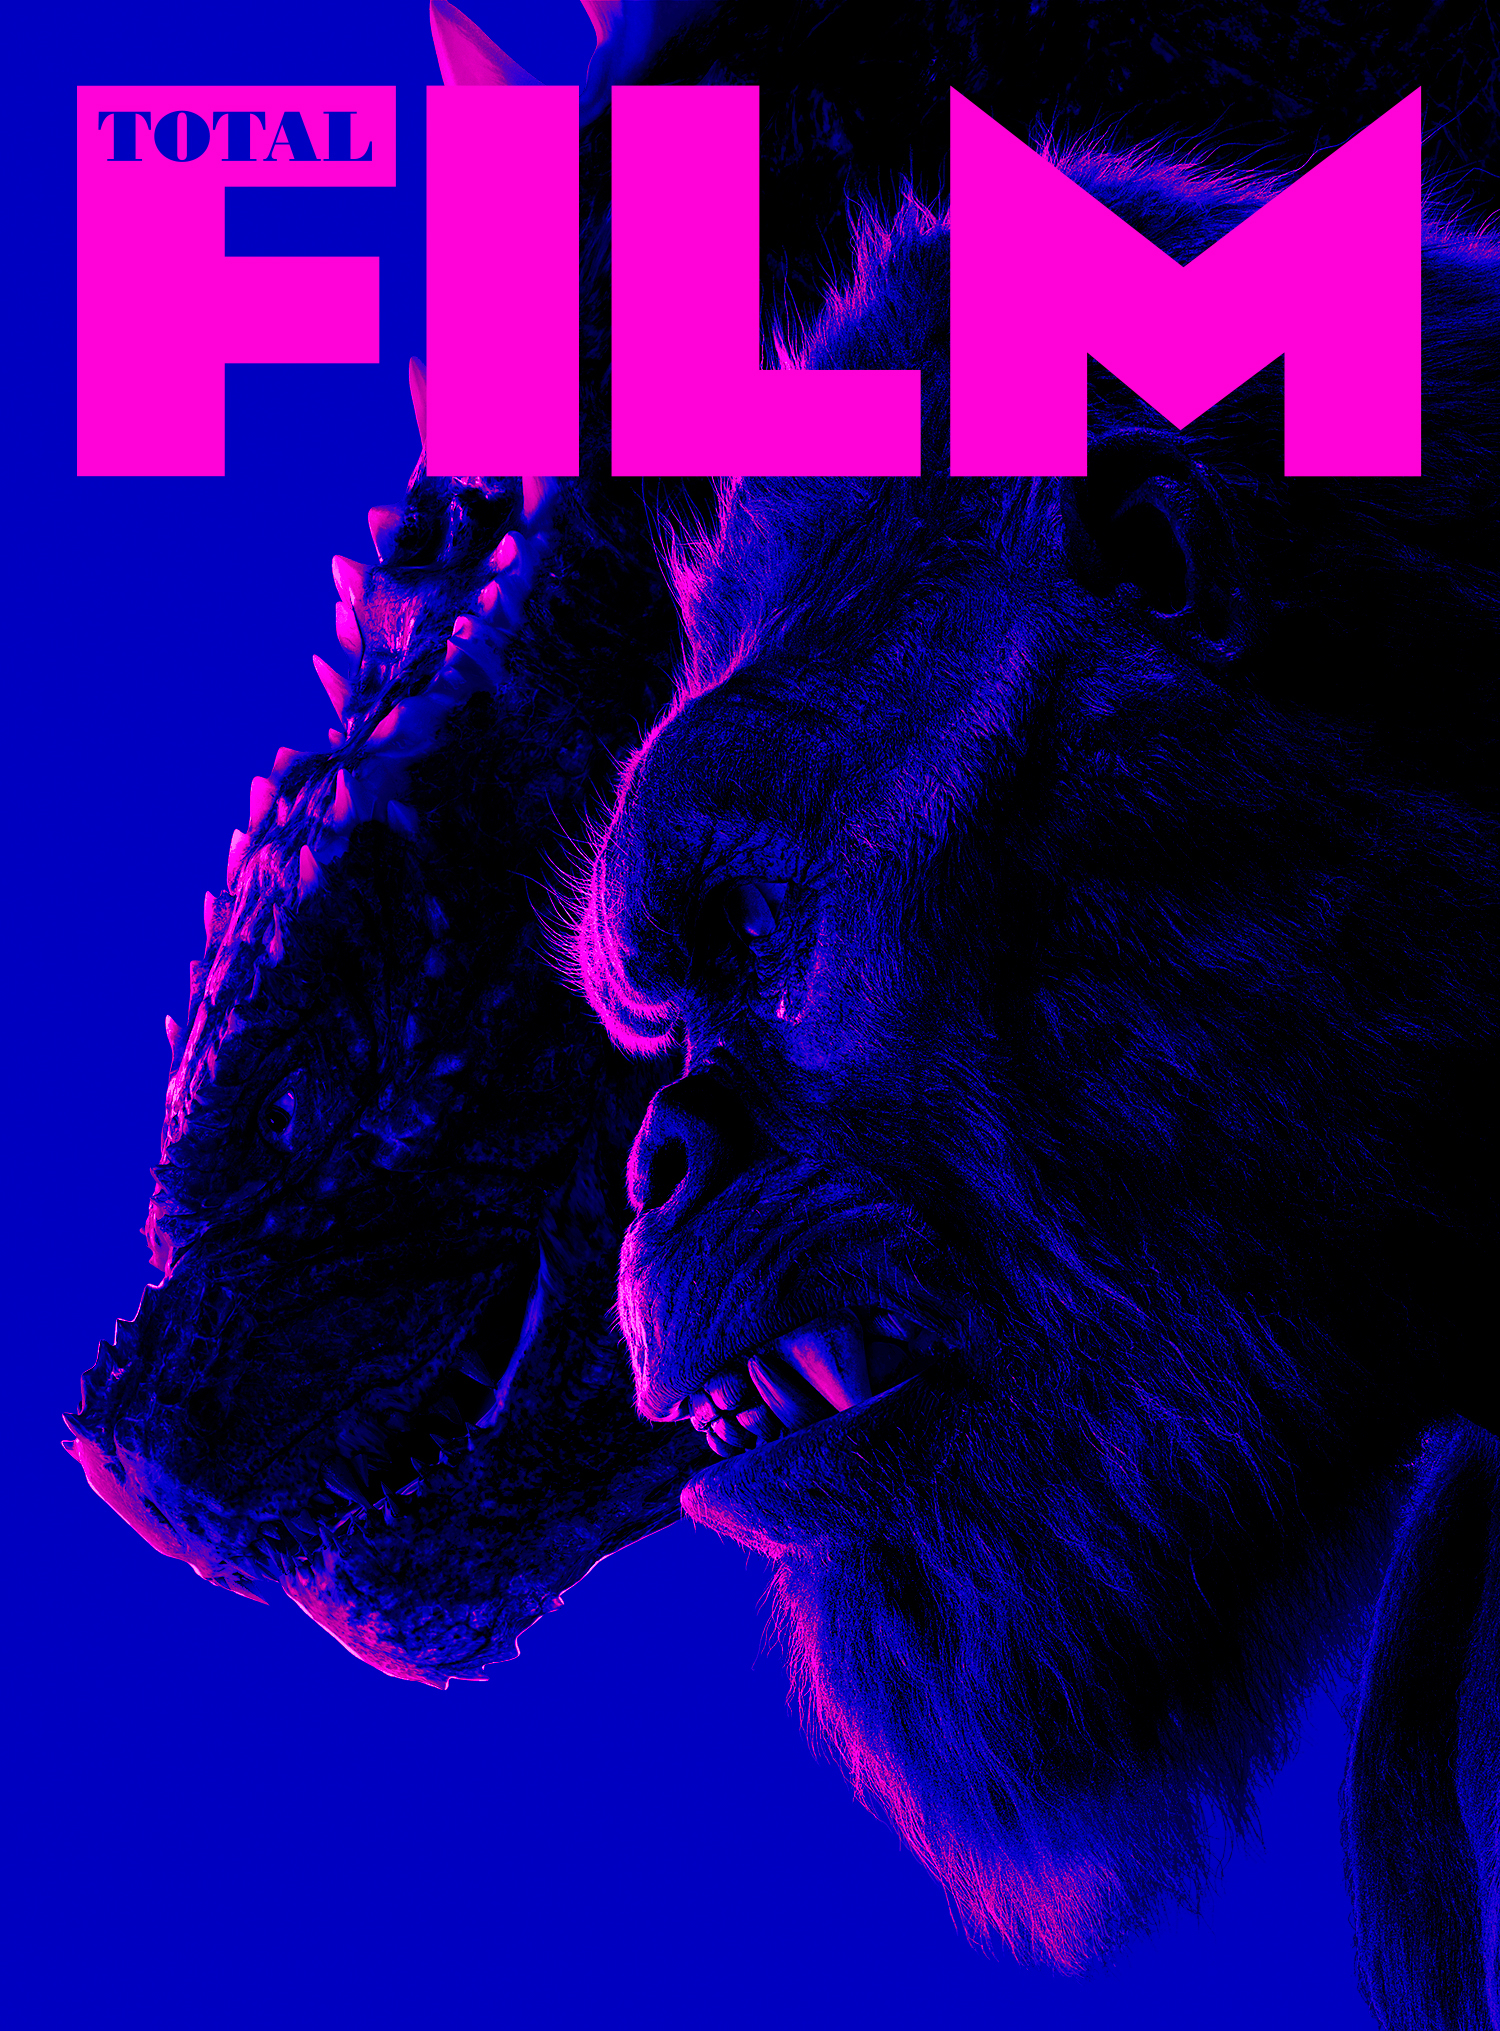 La couverture de l'abonnement Godzilla x Kong de Total Film